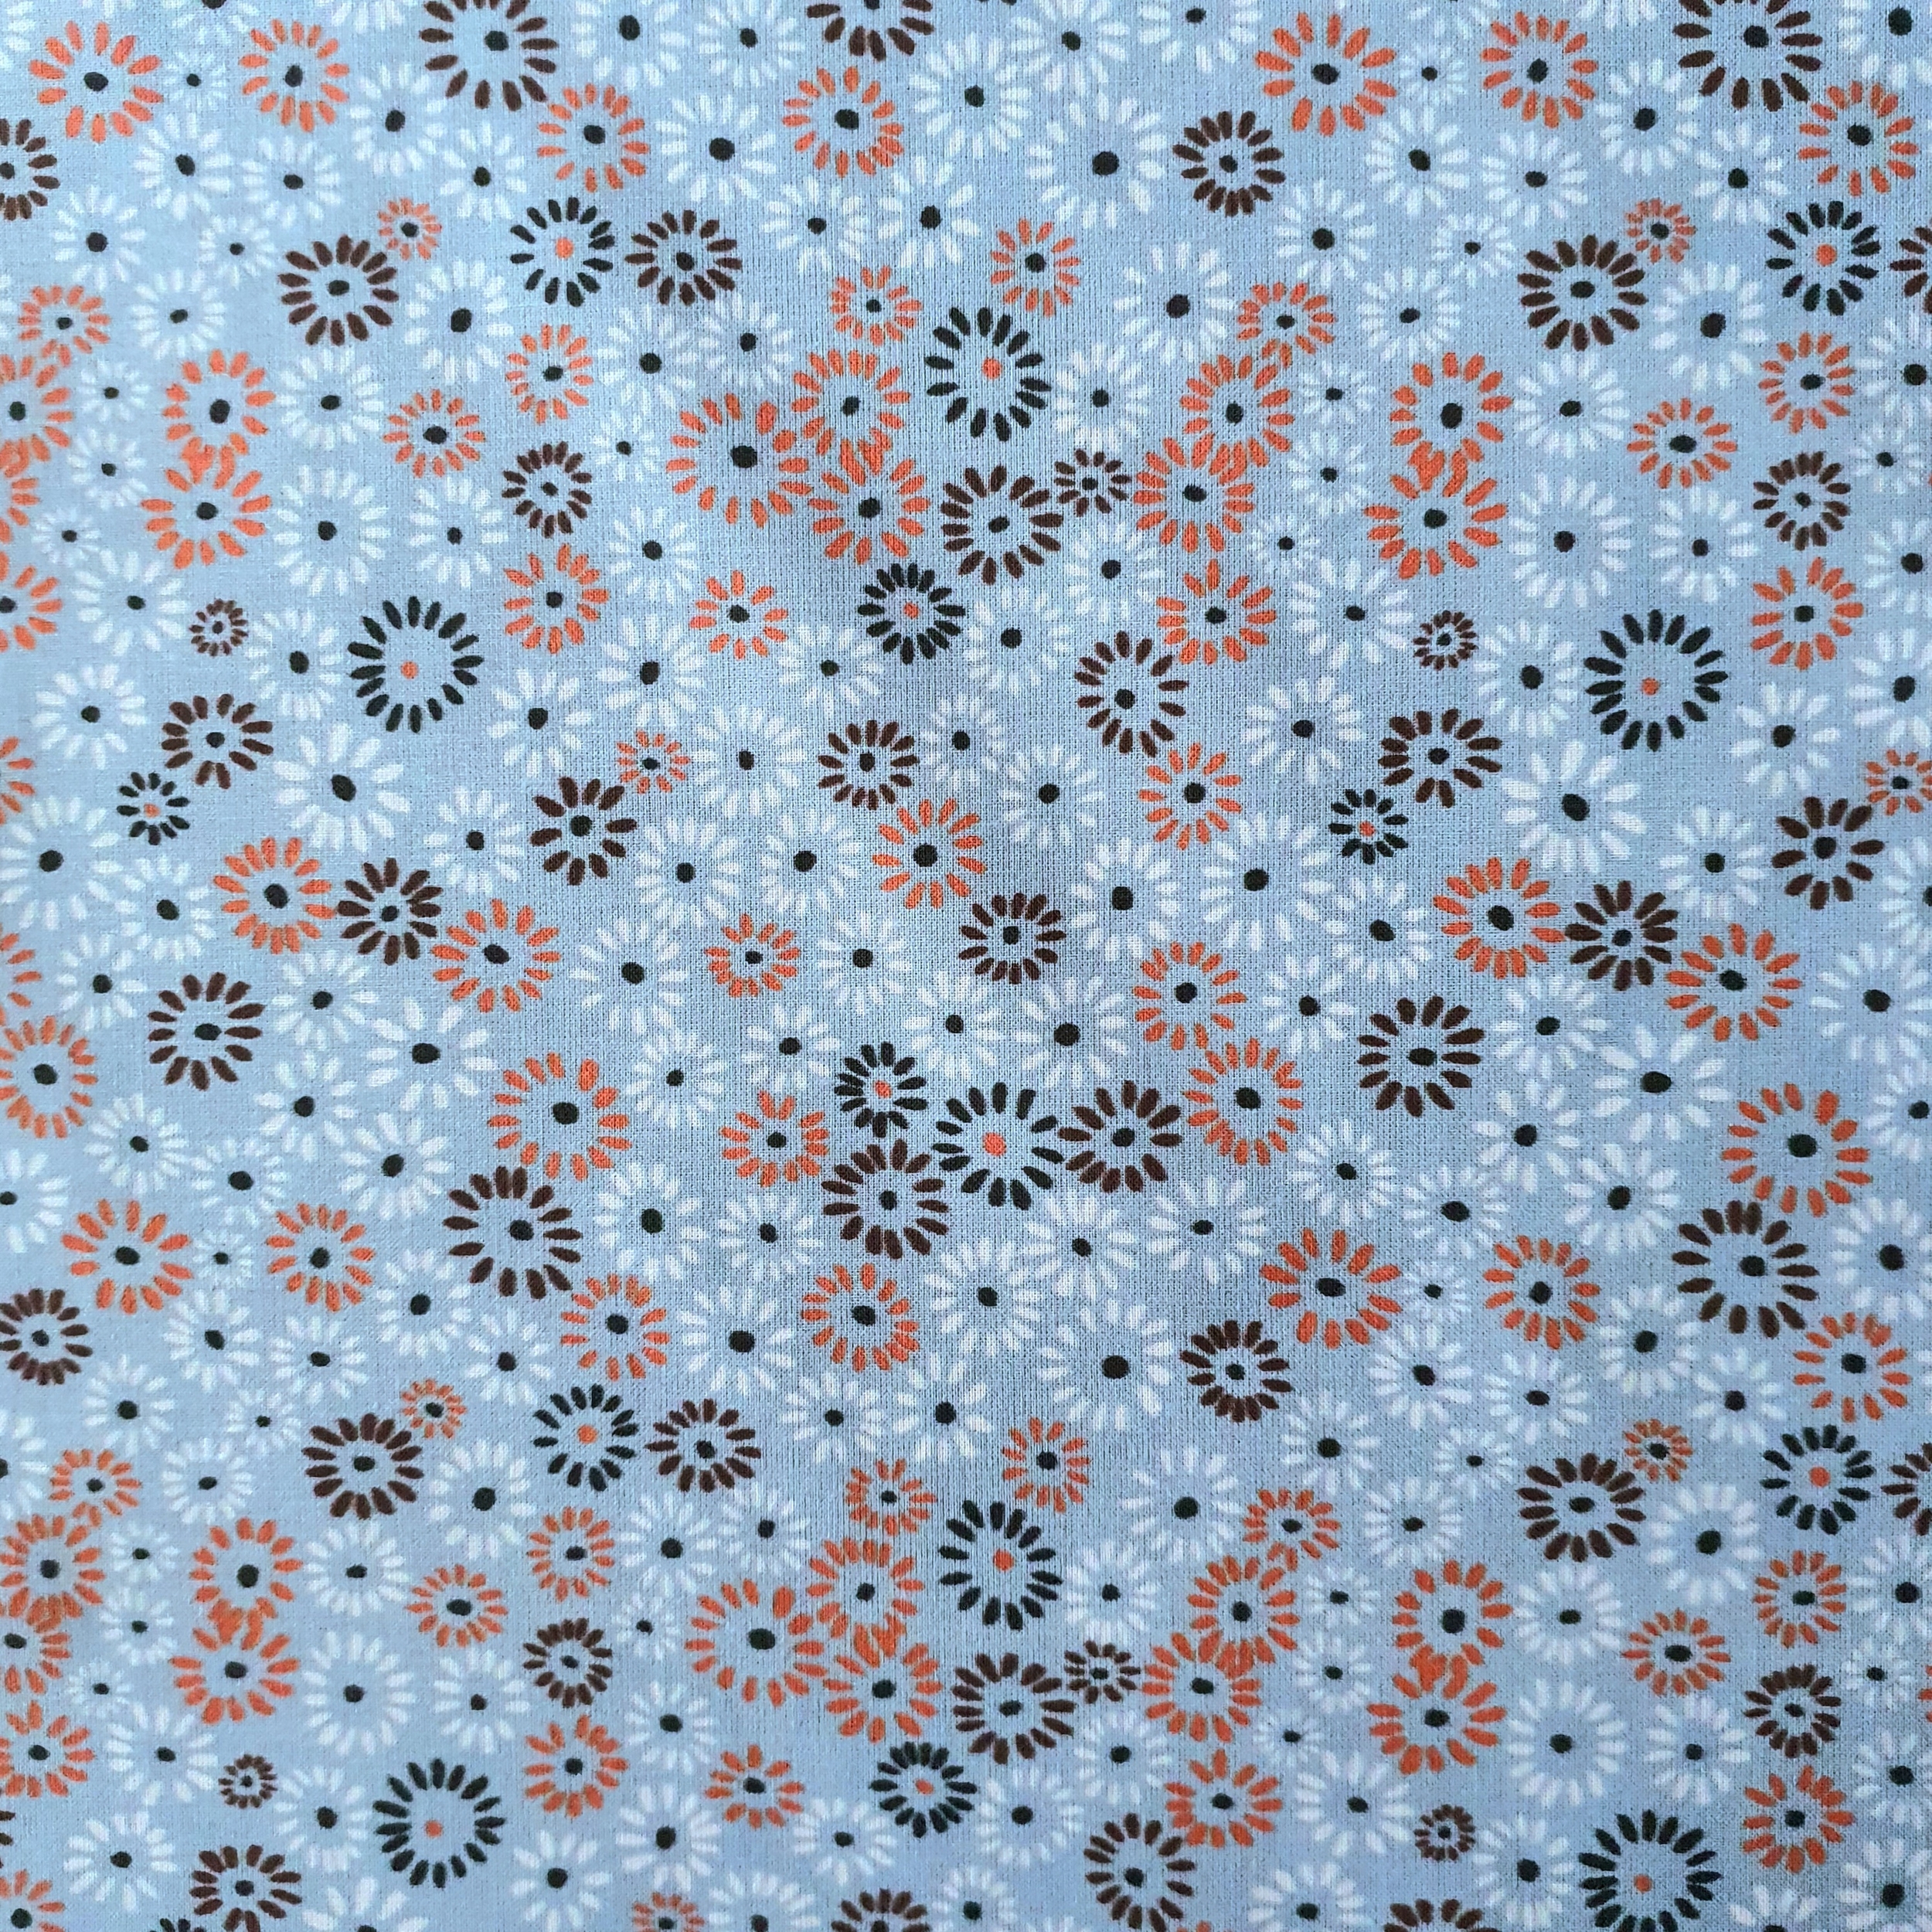 Tissu coton BIO fleur fond bleu ciel orange marron